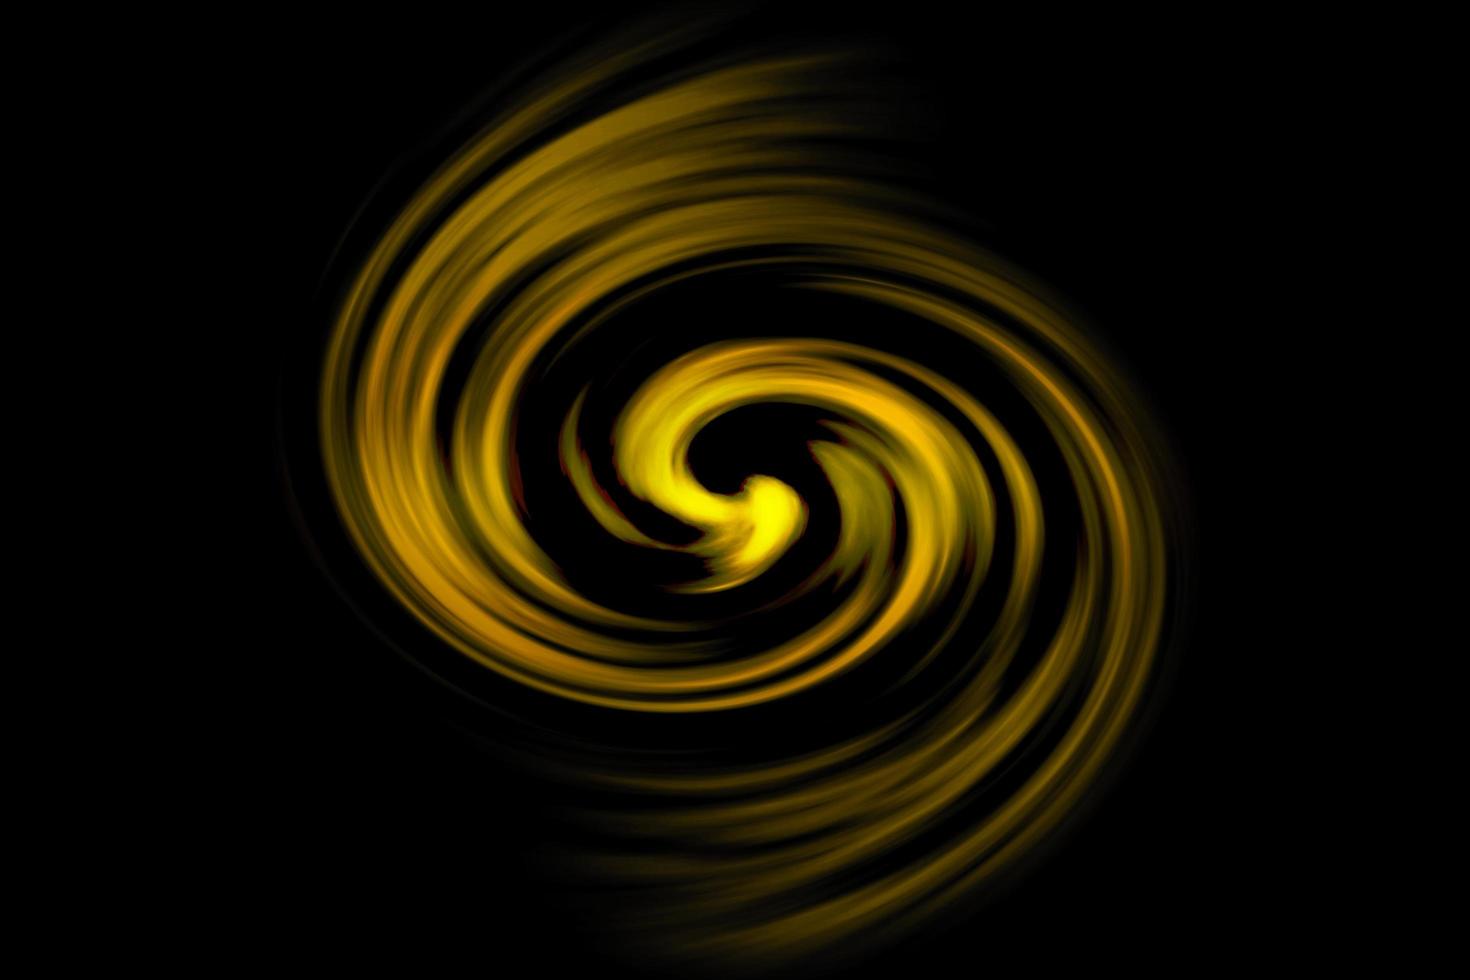 galassia a spirale astratta con nebbia giallo chiaro su sfondo nero foto